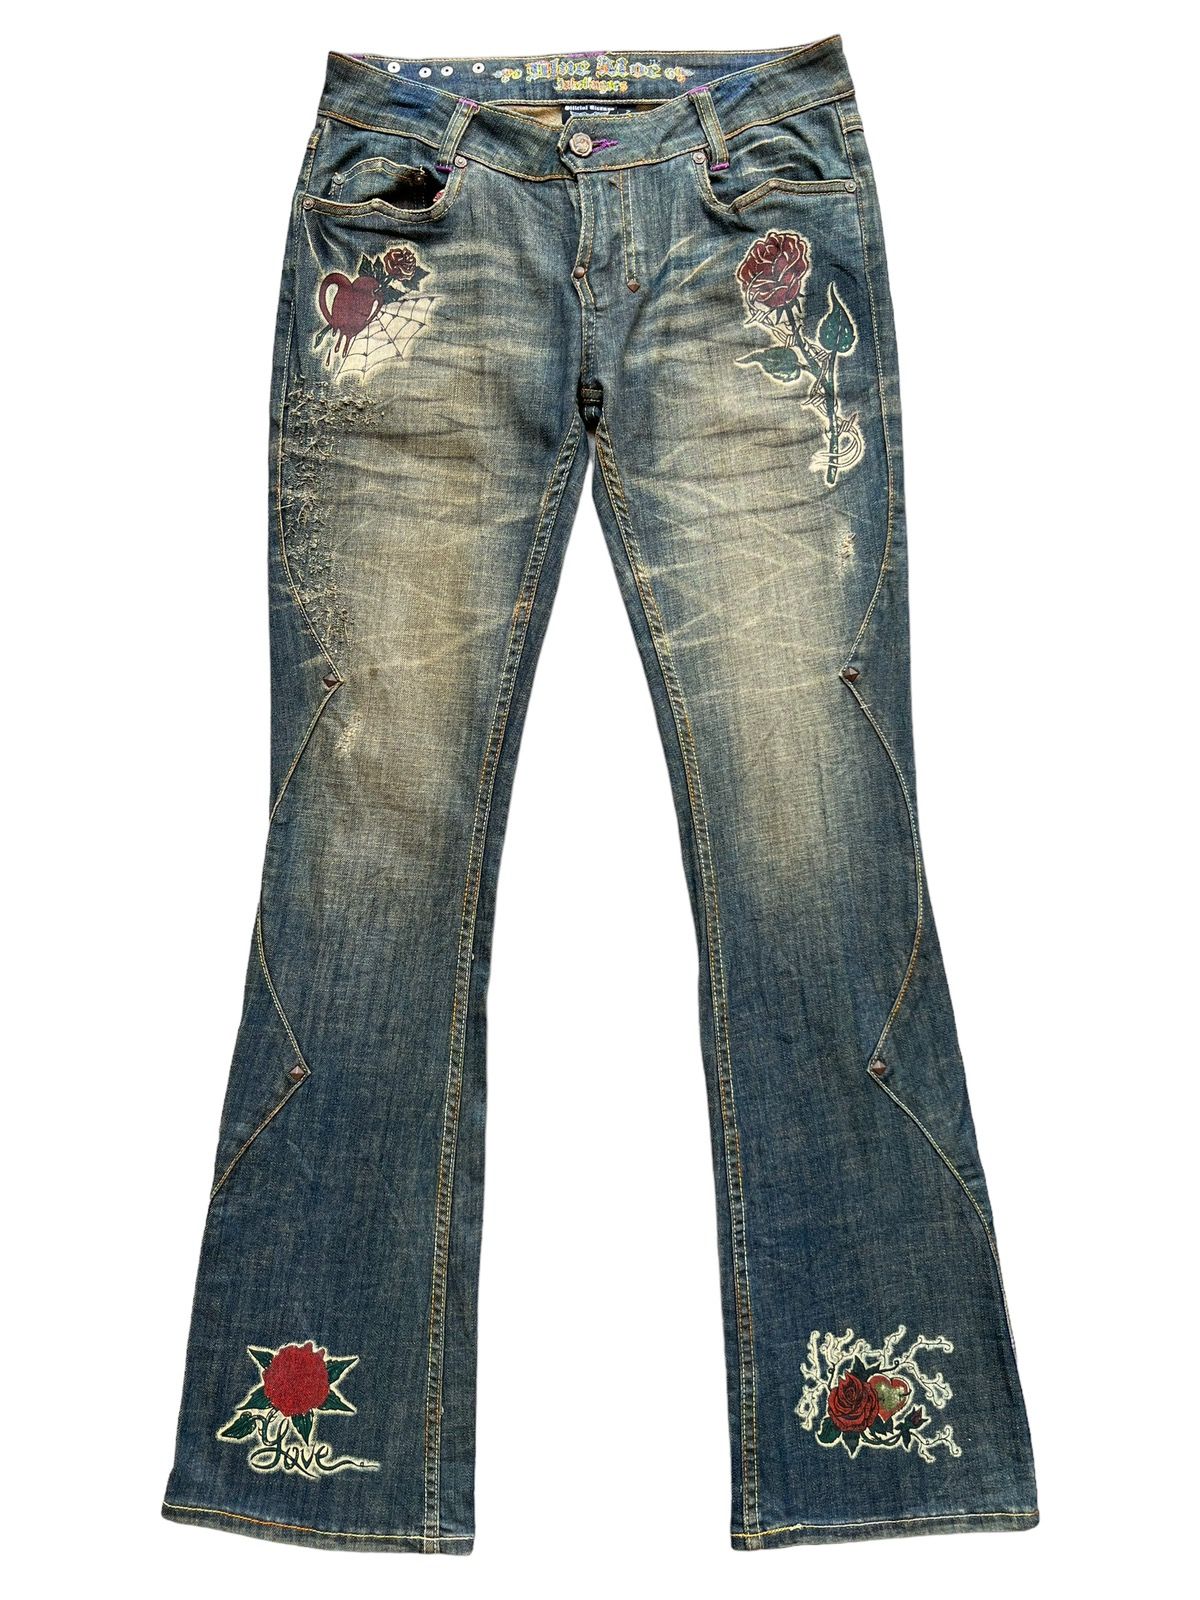 Archival Clothing - Vintage Gotchic Bones Mudwash Punk Flare Denim Jeans 28x33 - 2